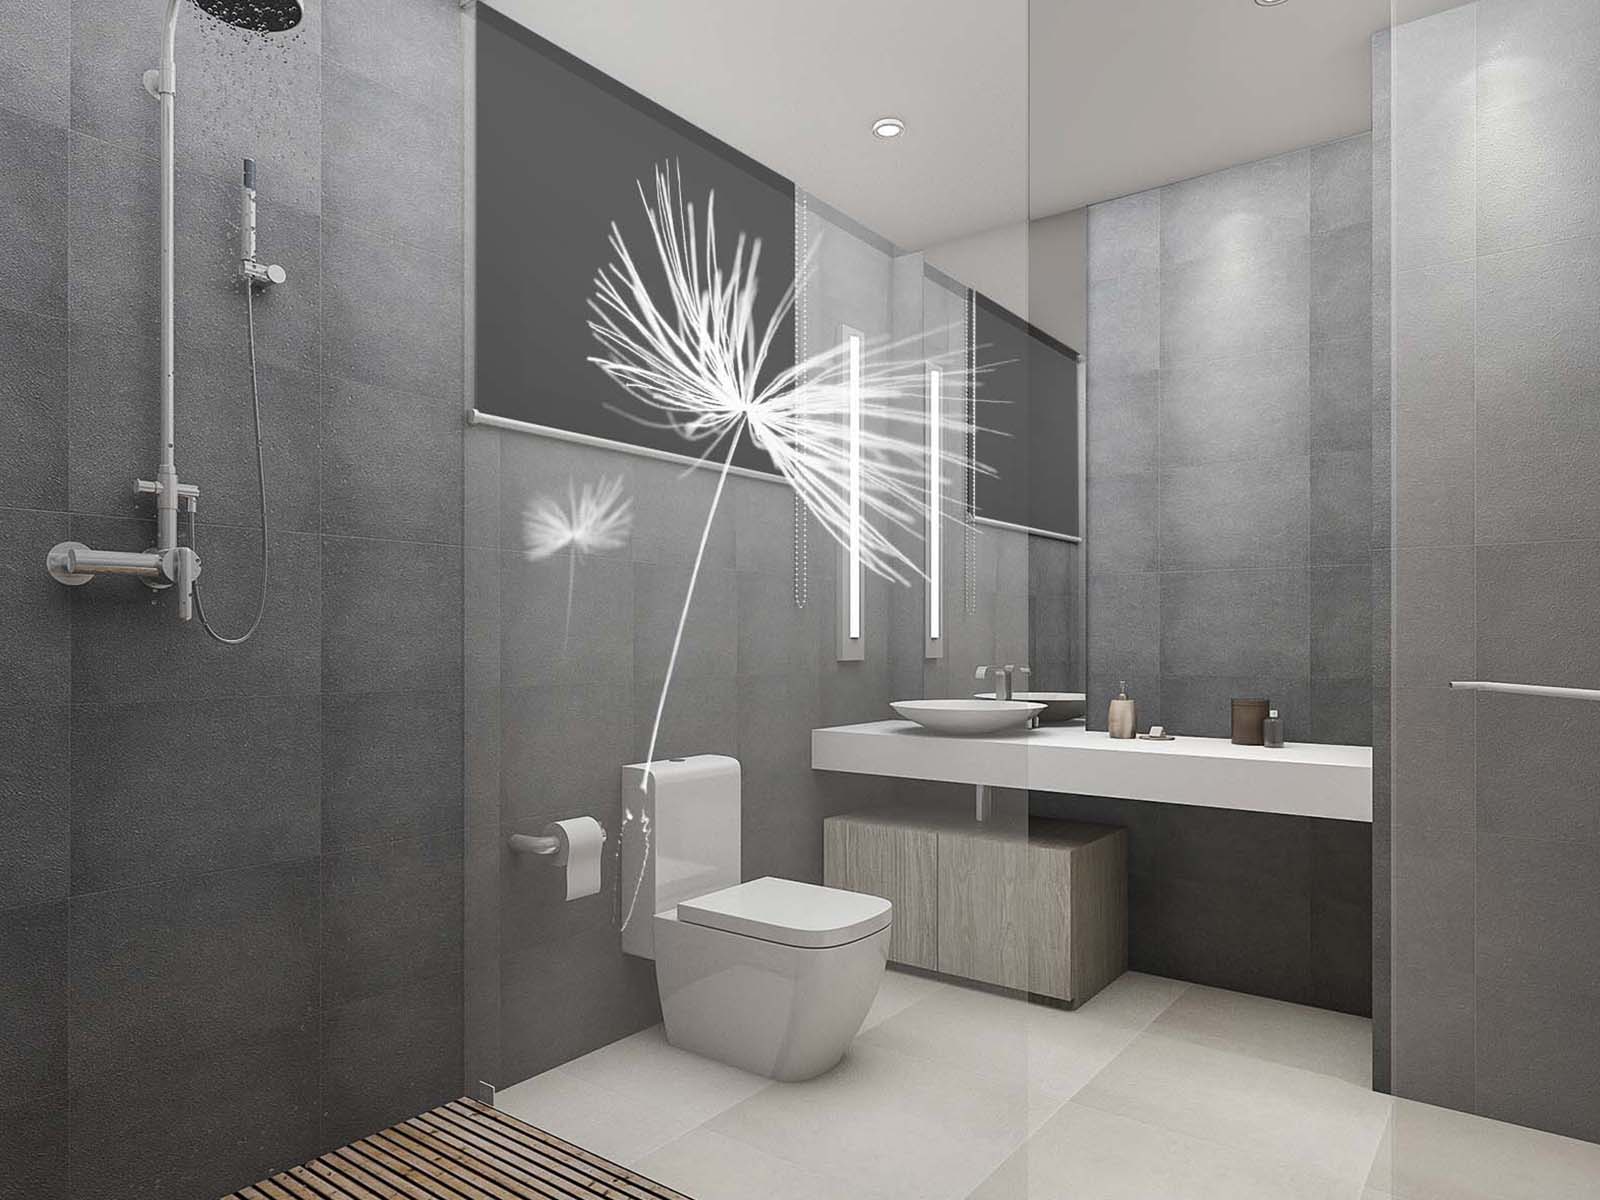 Walk-in-Dusche in klassischem Badezimmer mit Pusteblumen auf dem Glas